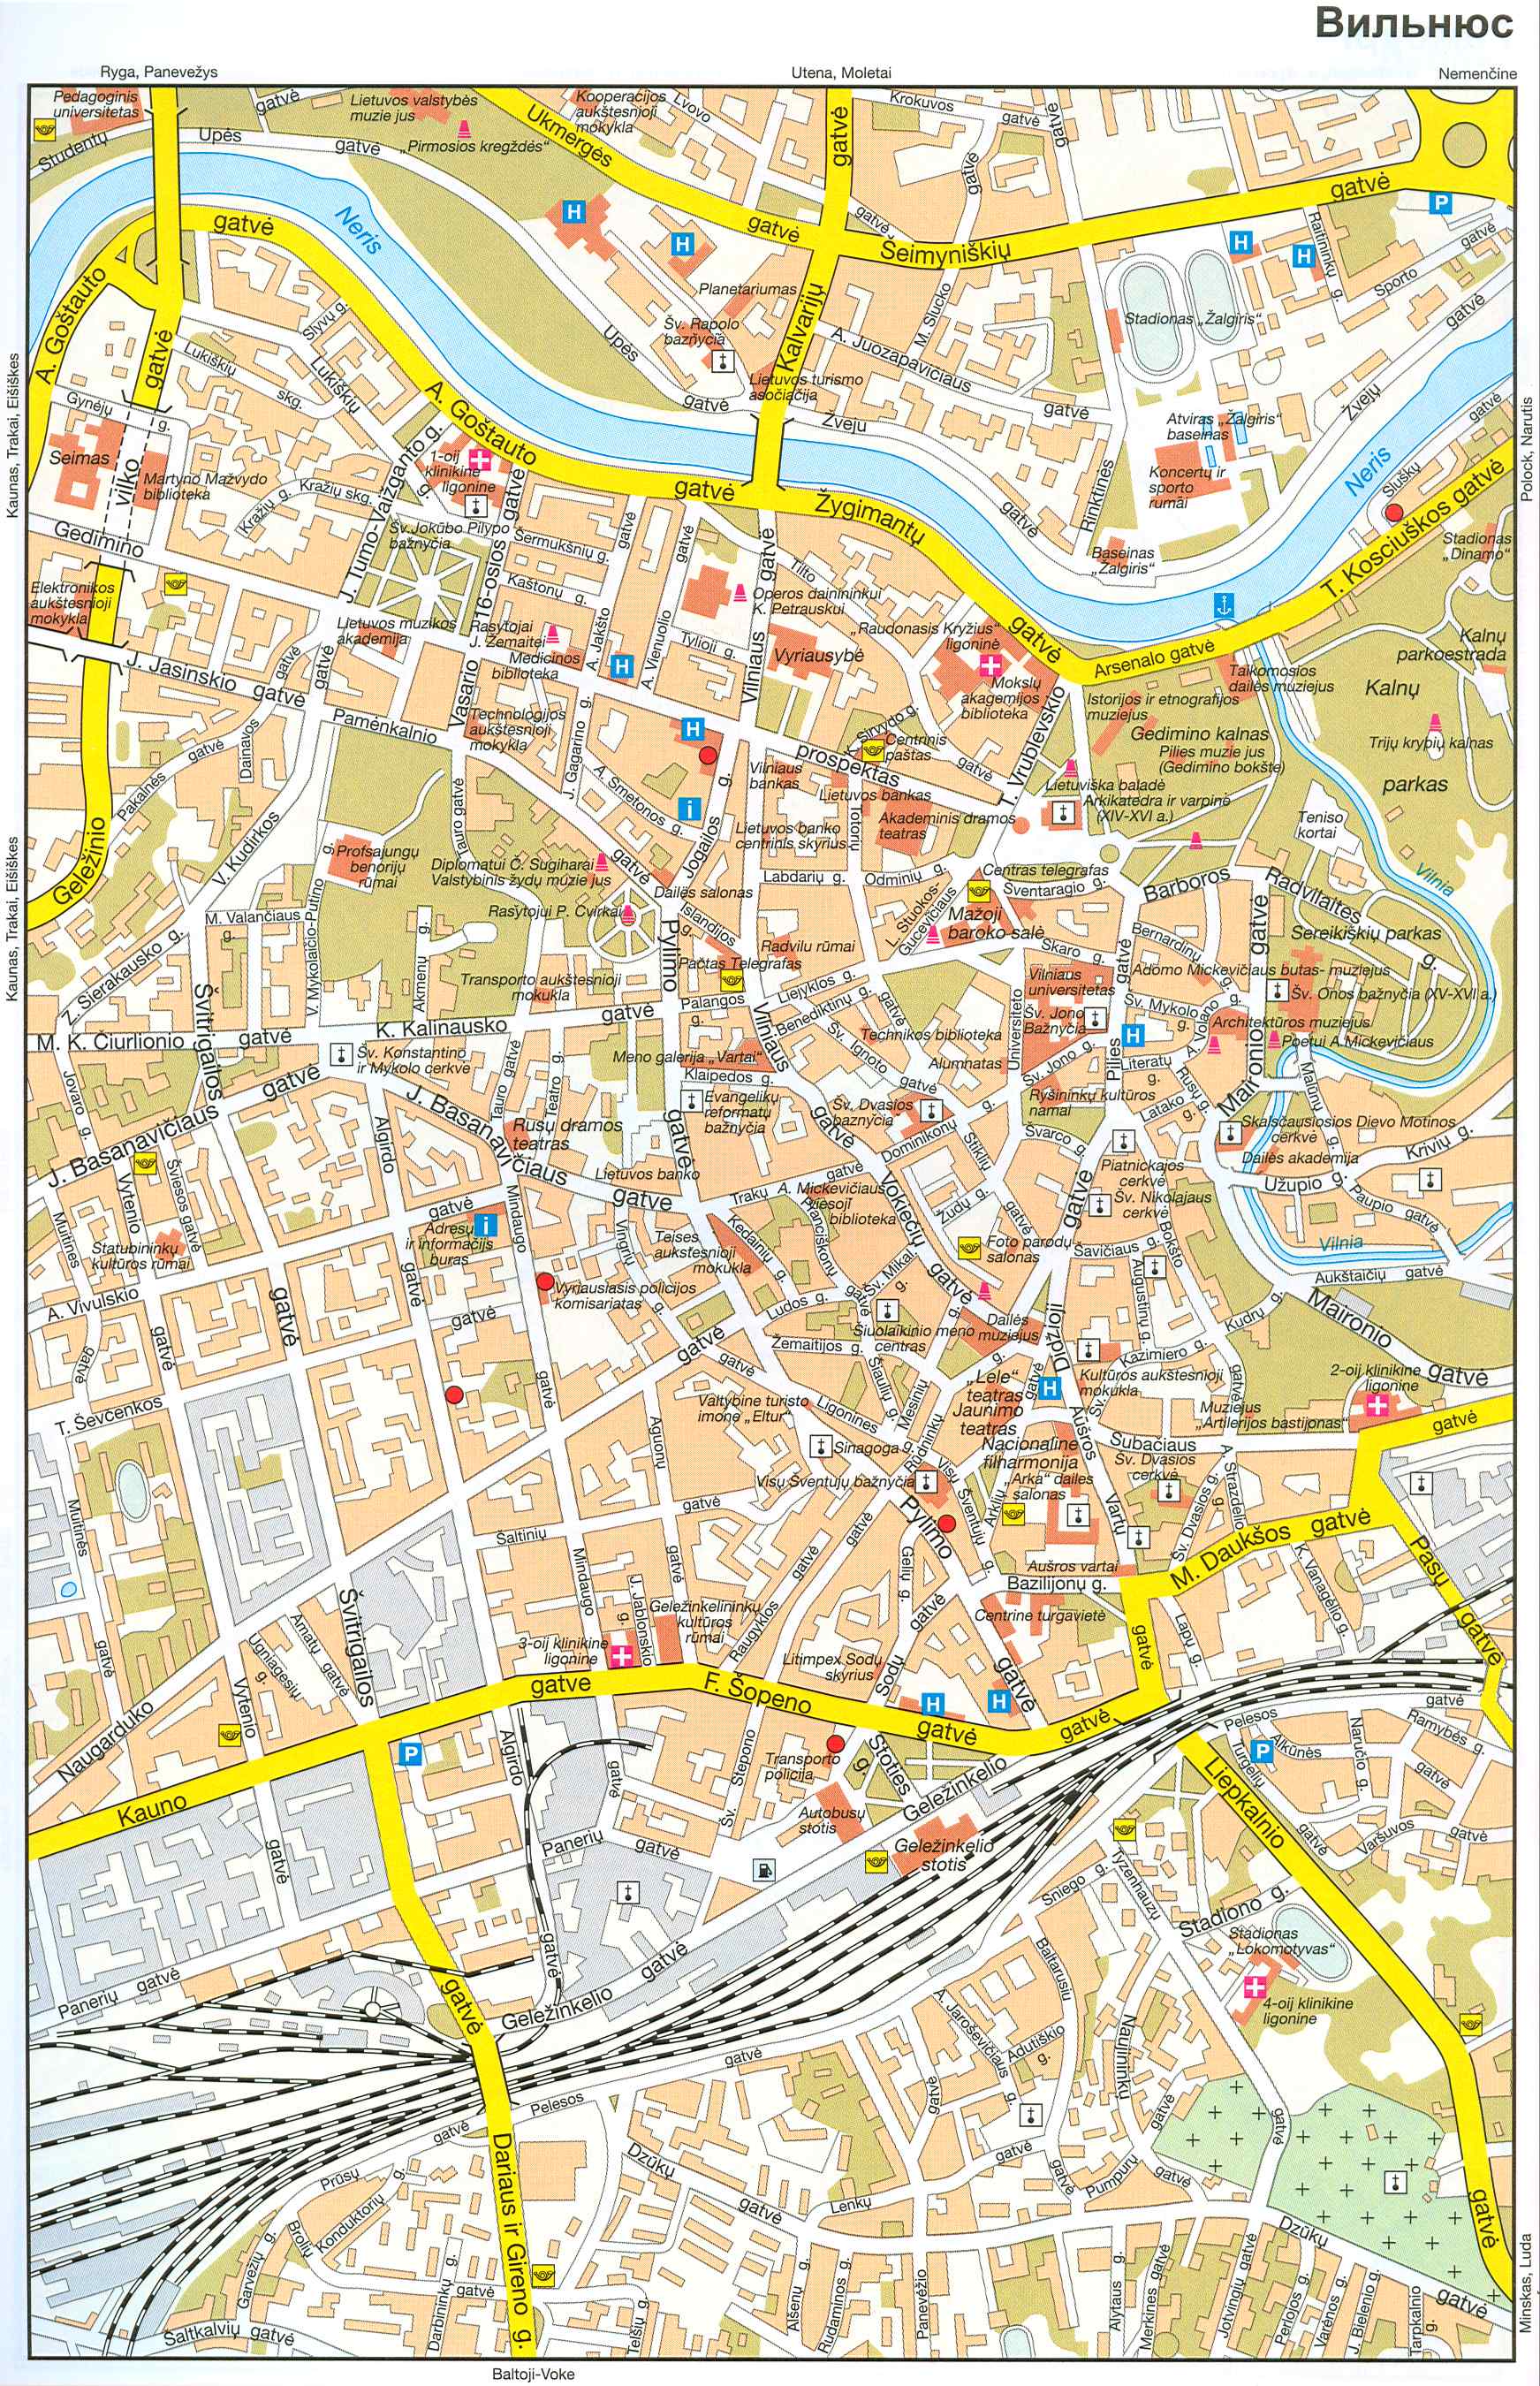 Литва, карта улиц Вильнюса. Подробная карта улиц города Вильнюс с достопримечательностями, A0 - 